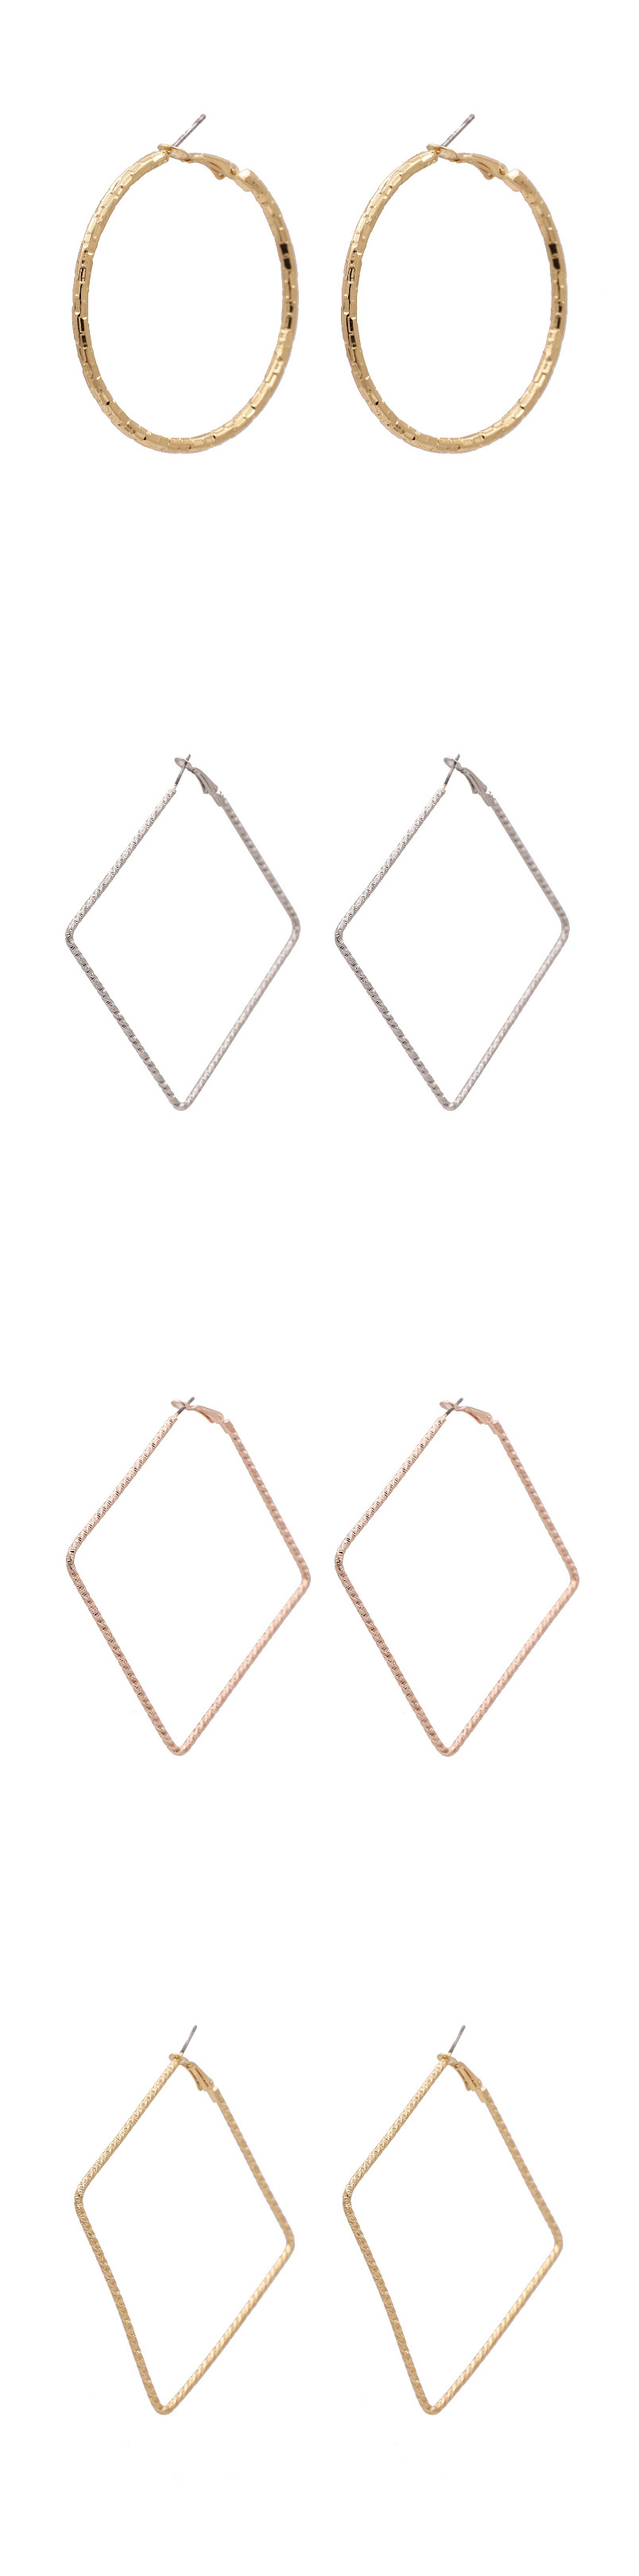 Fashion Hexagon Gold Polygonal Geometric Stars Love Alloy Earrings,Stud Earrings